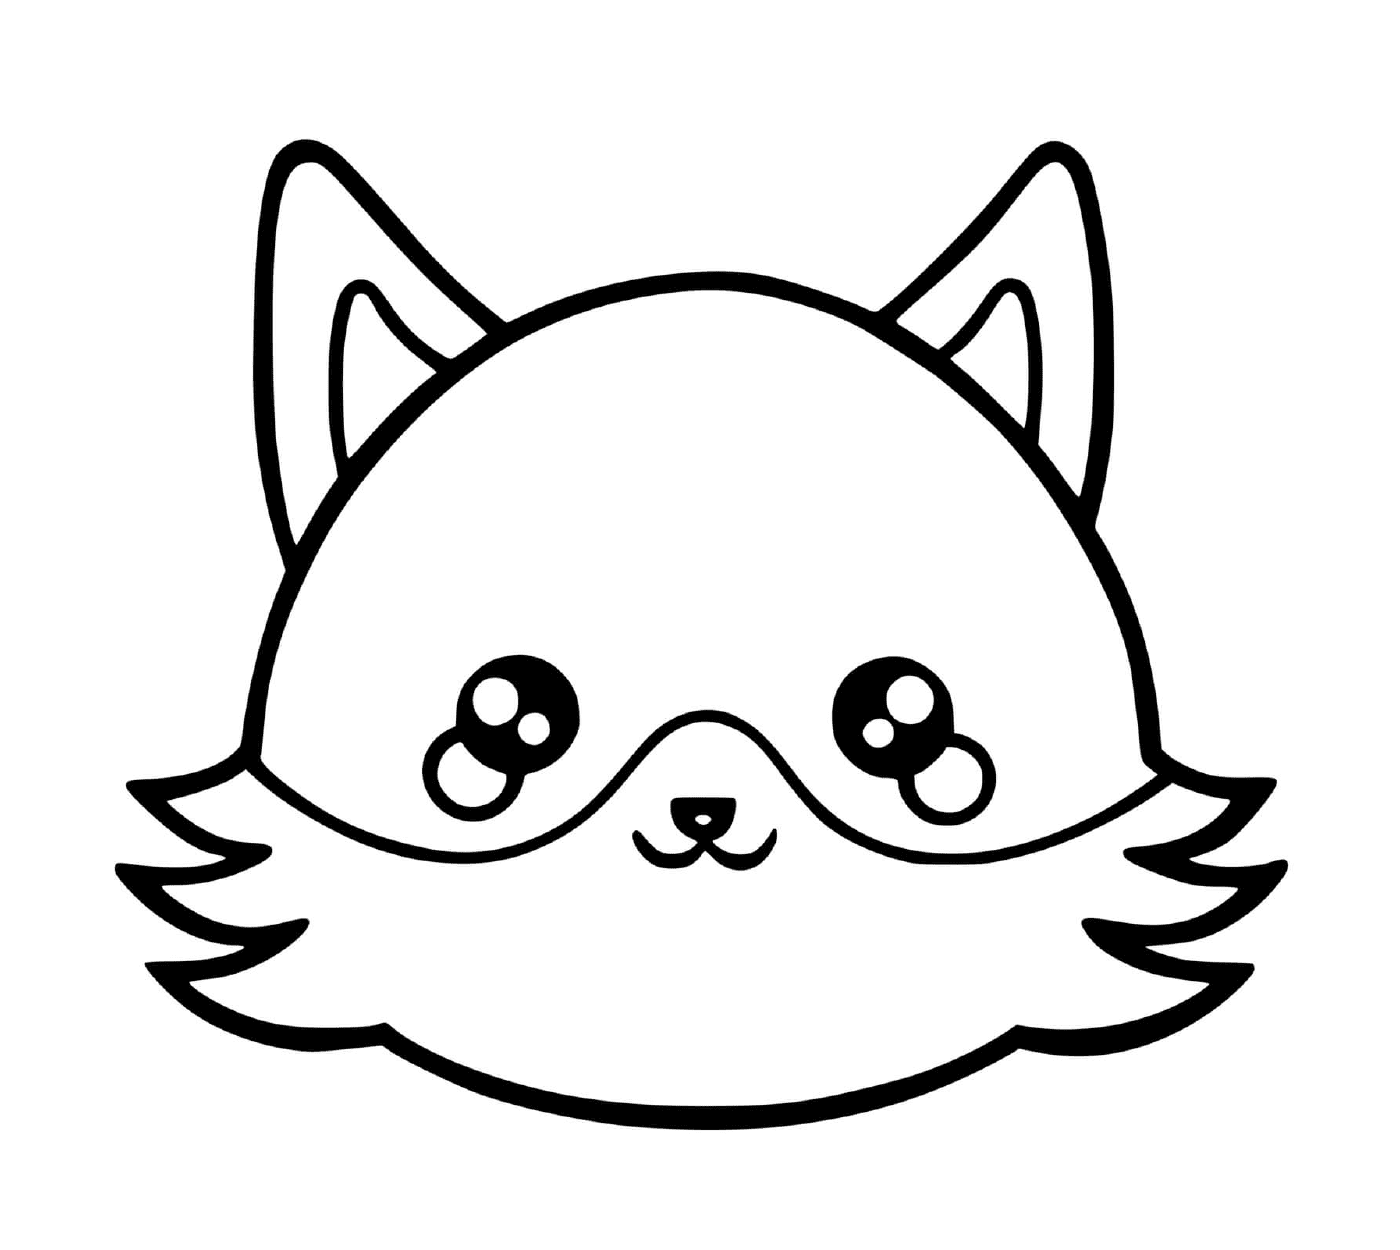  Uma raposa com uma cara de gato desenhada sobre ela 